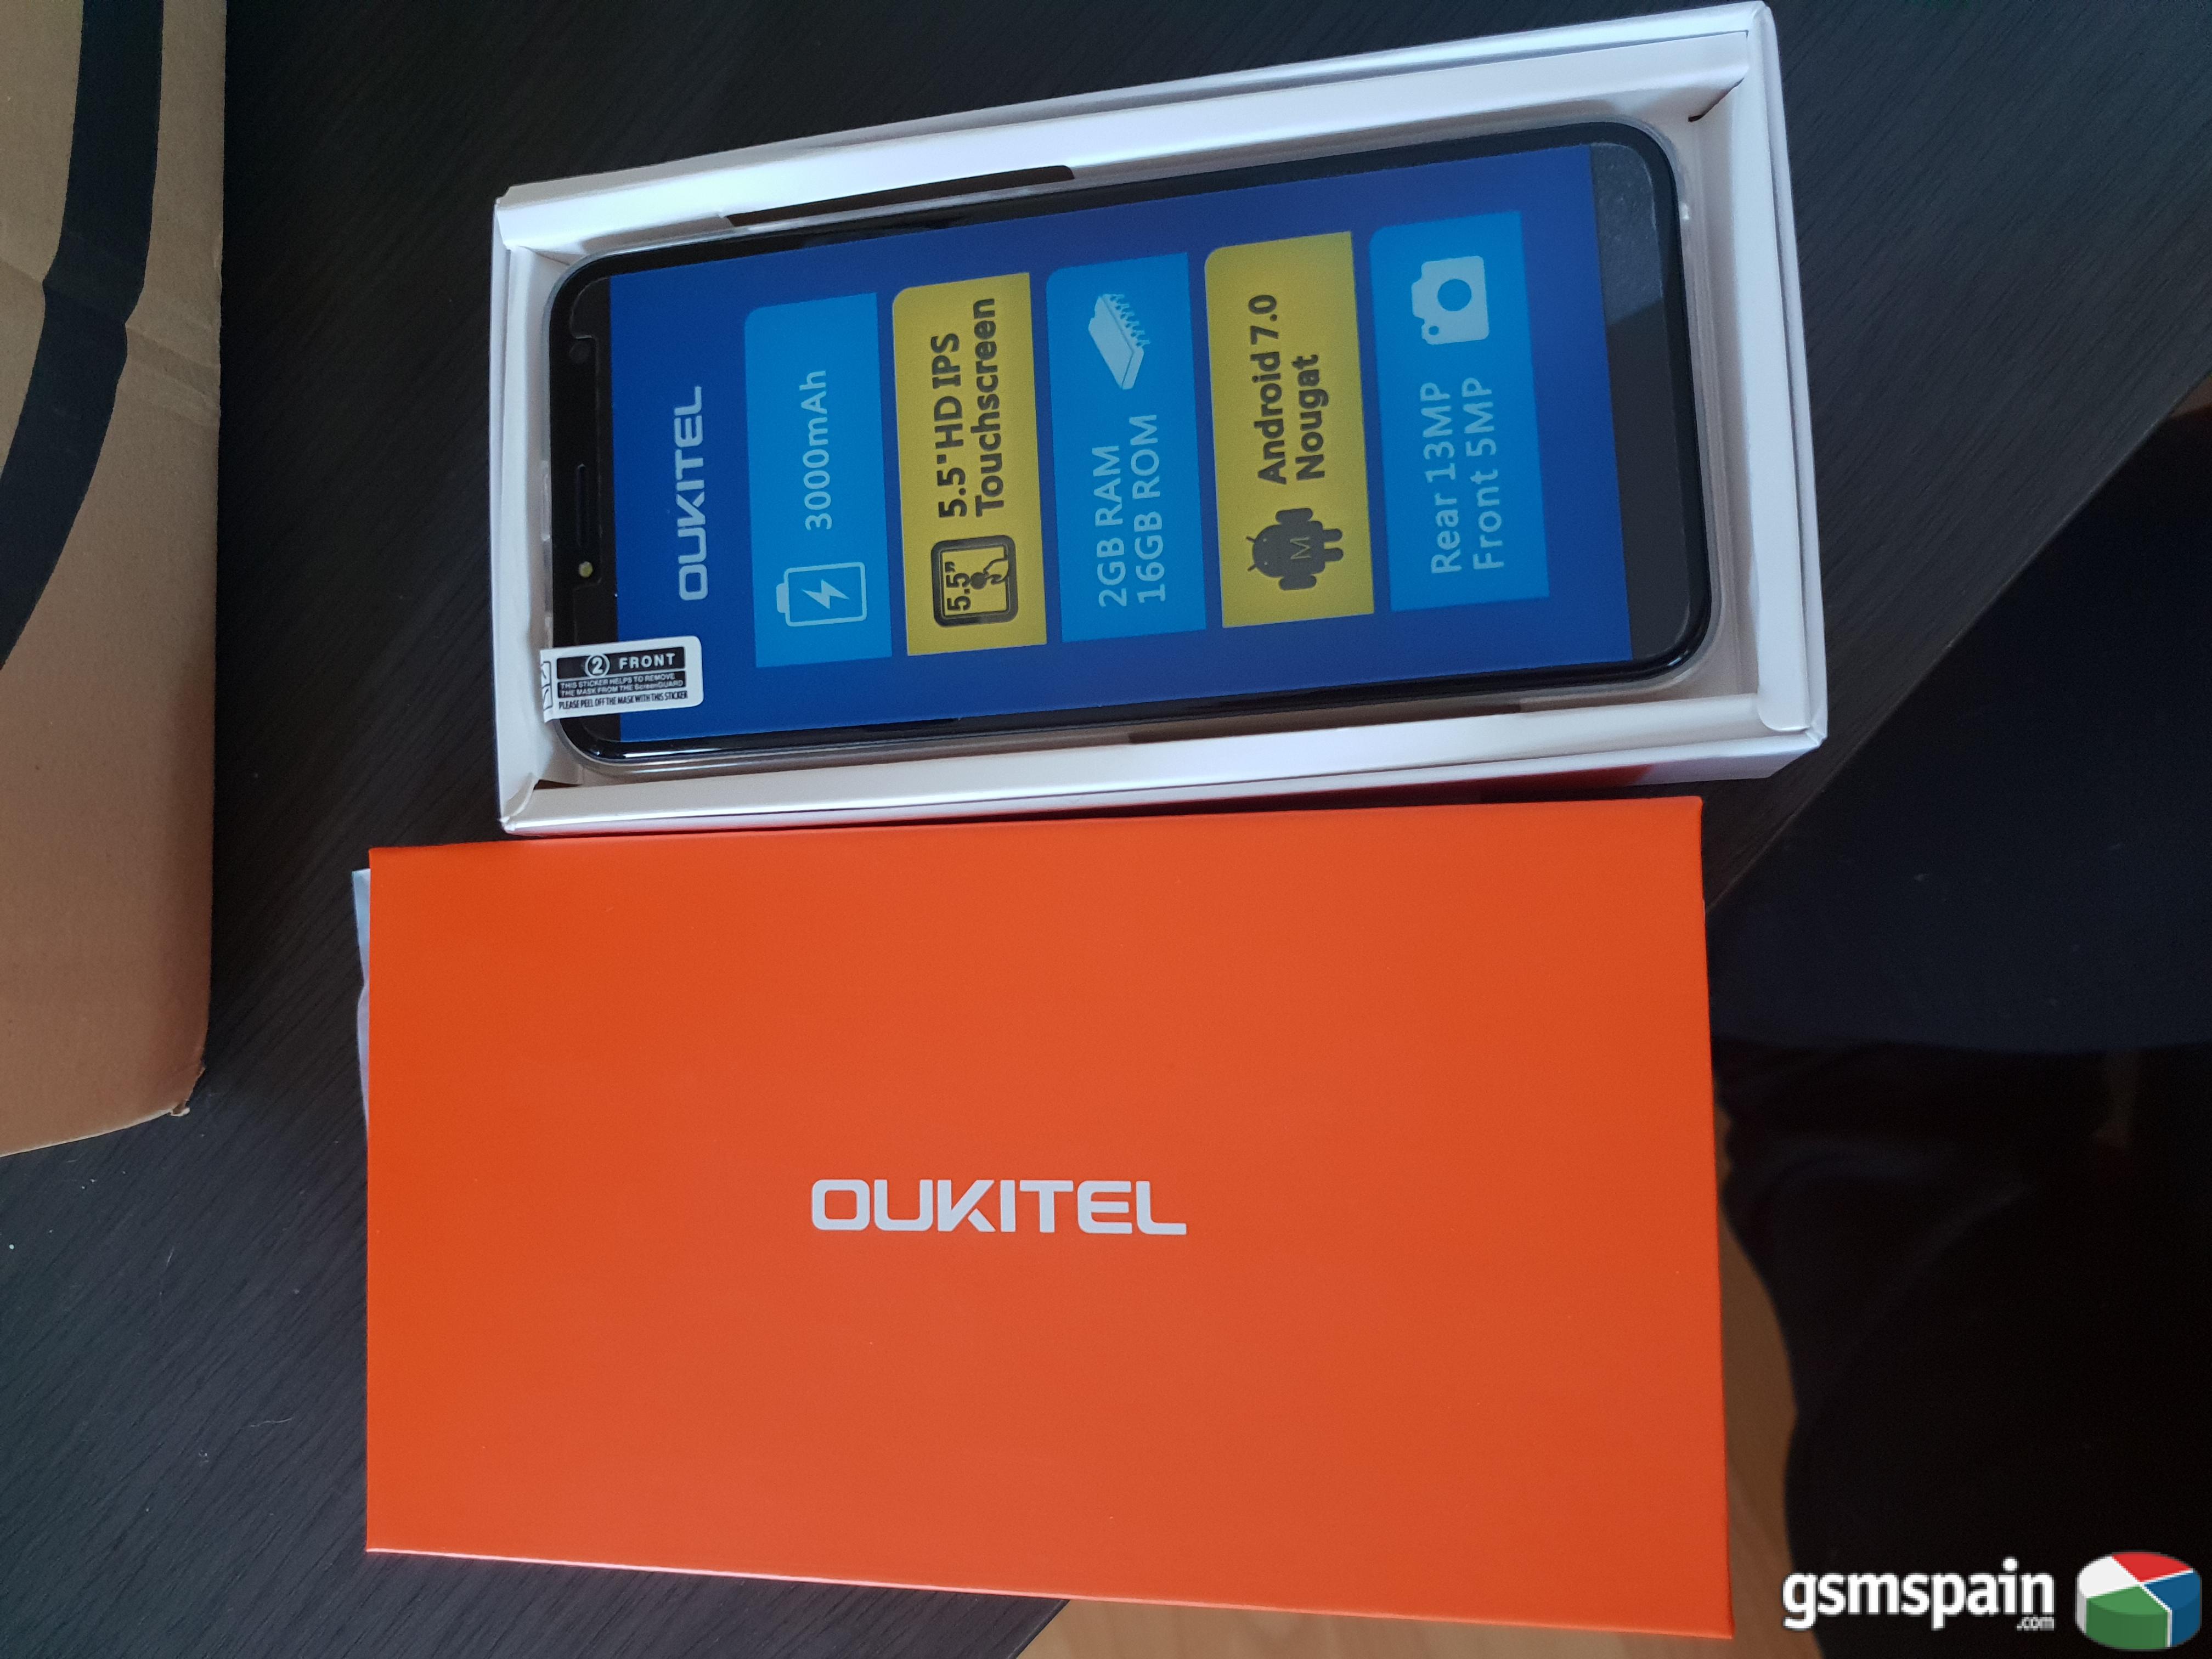 [VENDO] ### Oukitel C8 4G ### Dual SIM, totalmente nuevo, con Garanta de 2 aos